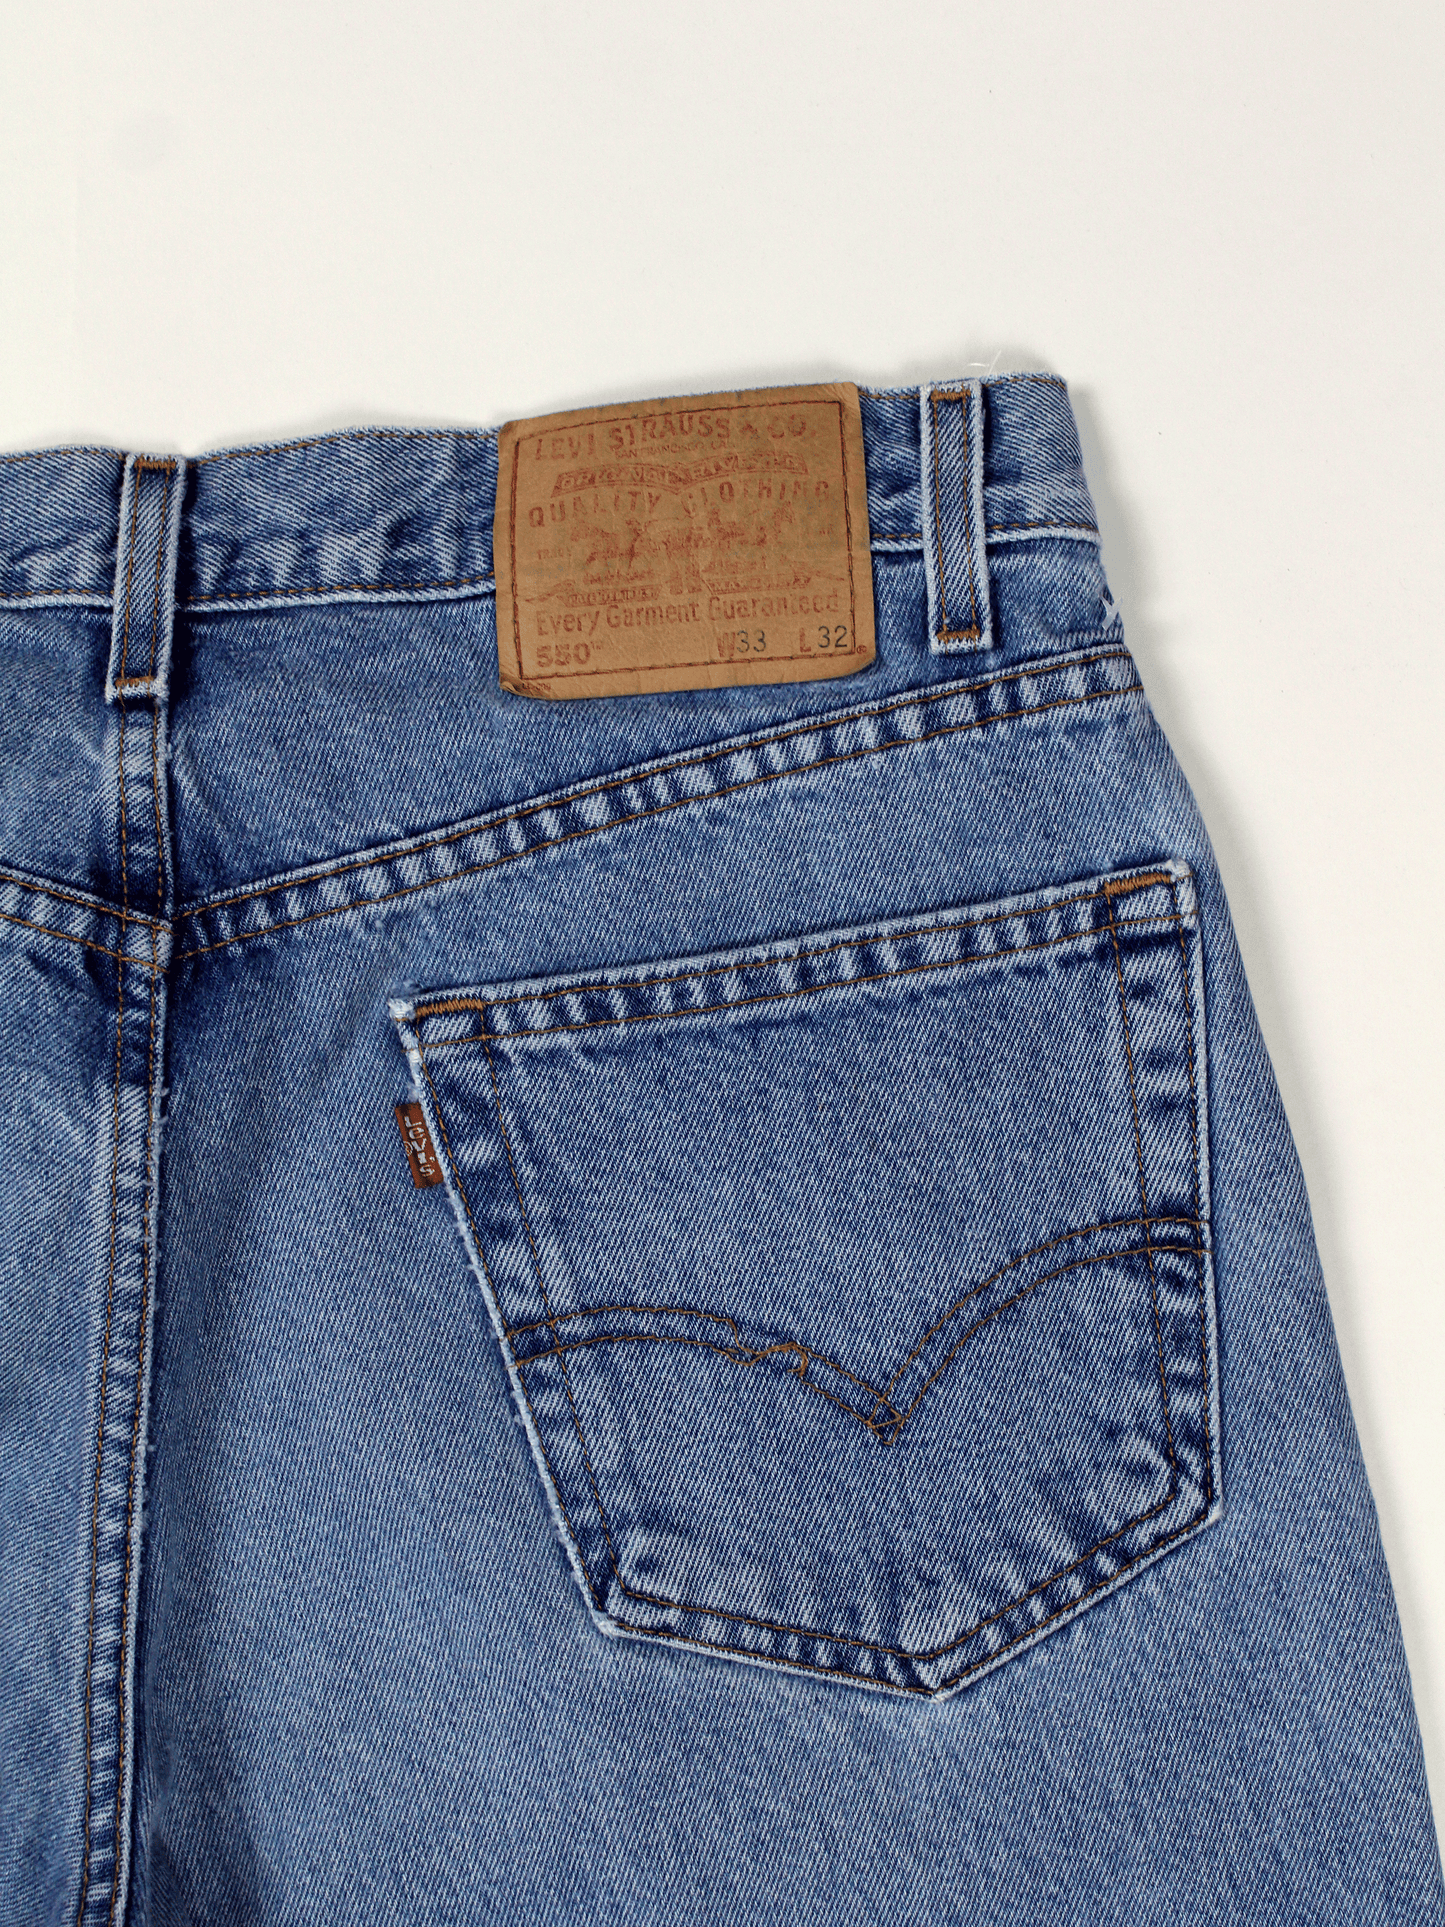 Jeans Levi's 550 Vintage